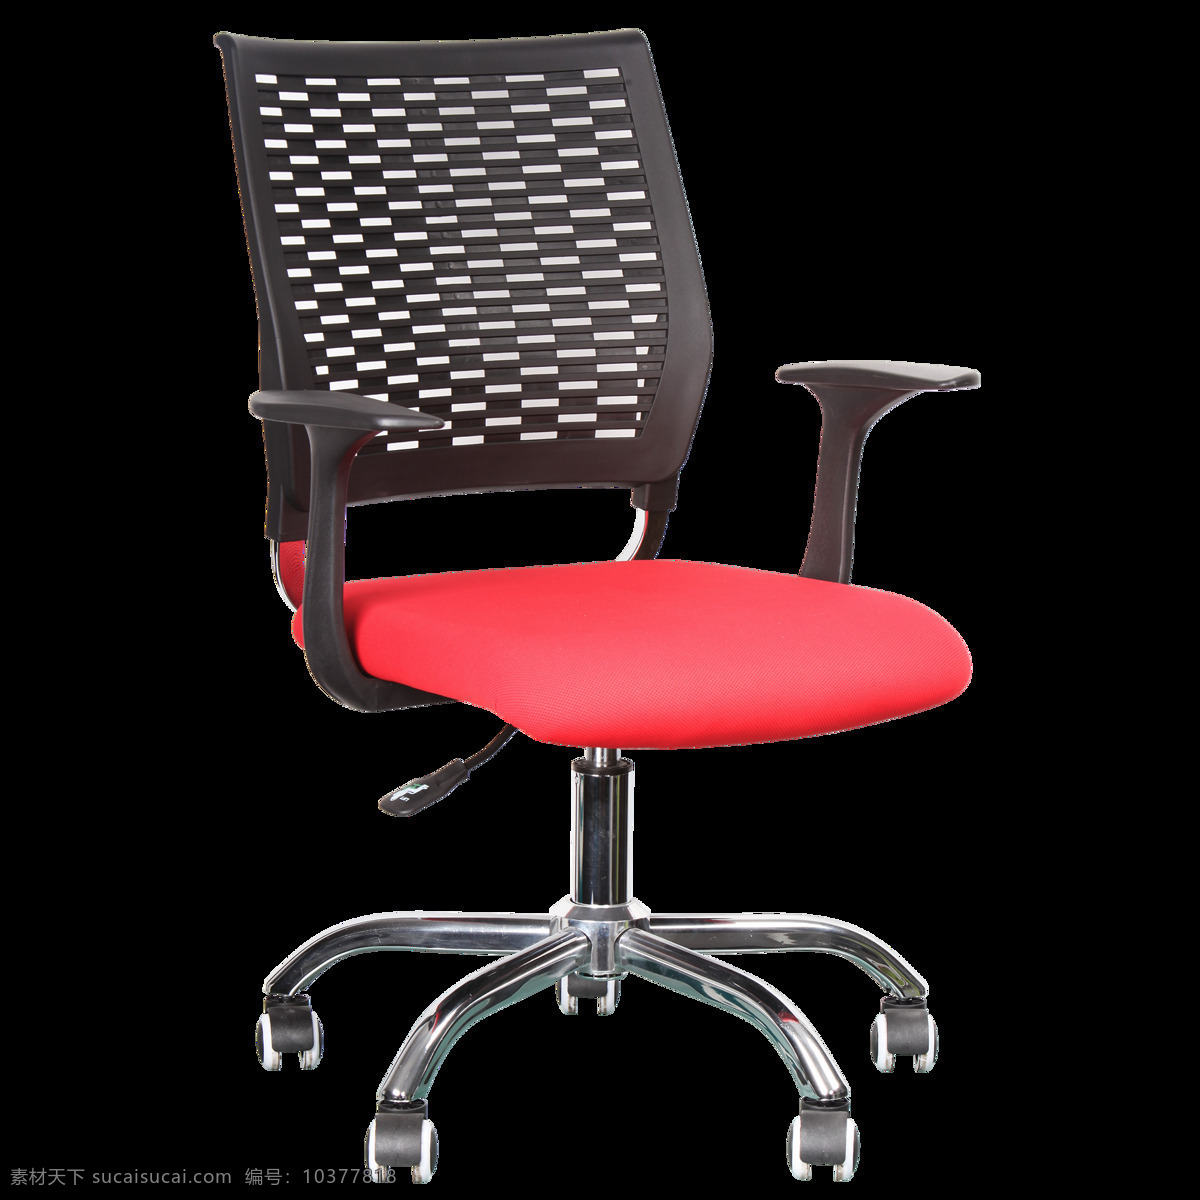 黑 红色 时尚 办公椅 度 时尚办公椅 软垫椅 红黑色 皮椅45度 红黑色软垫椅 家装类